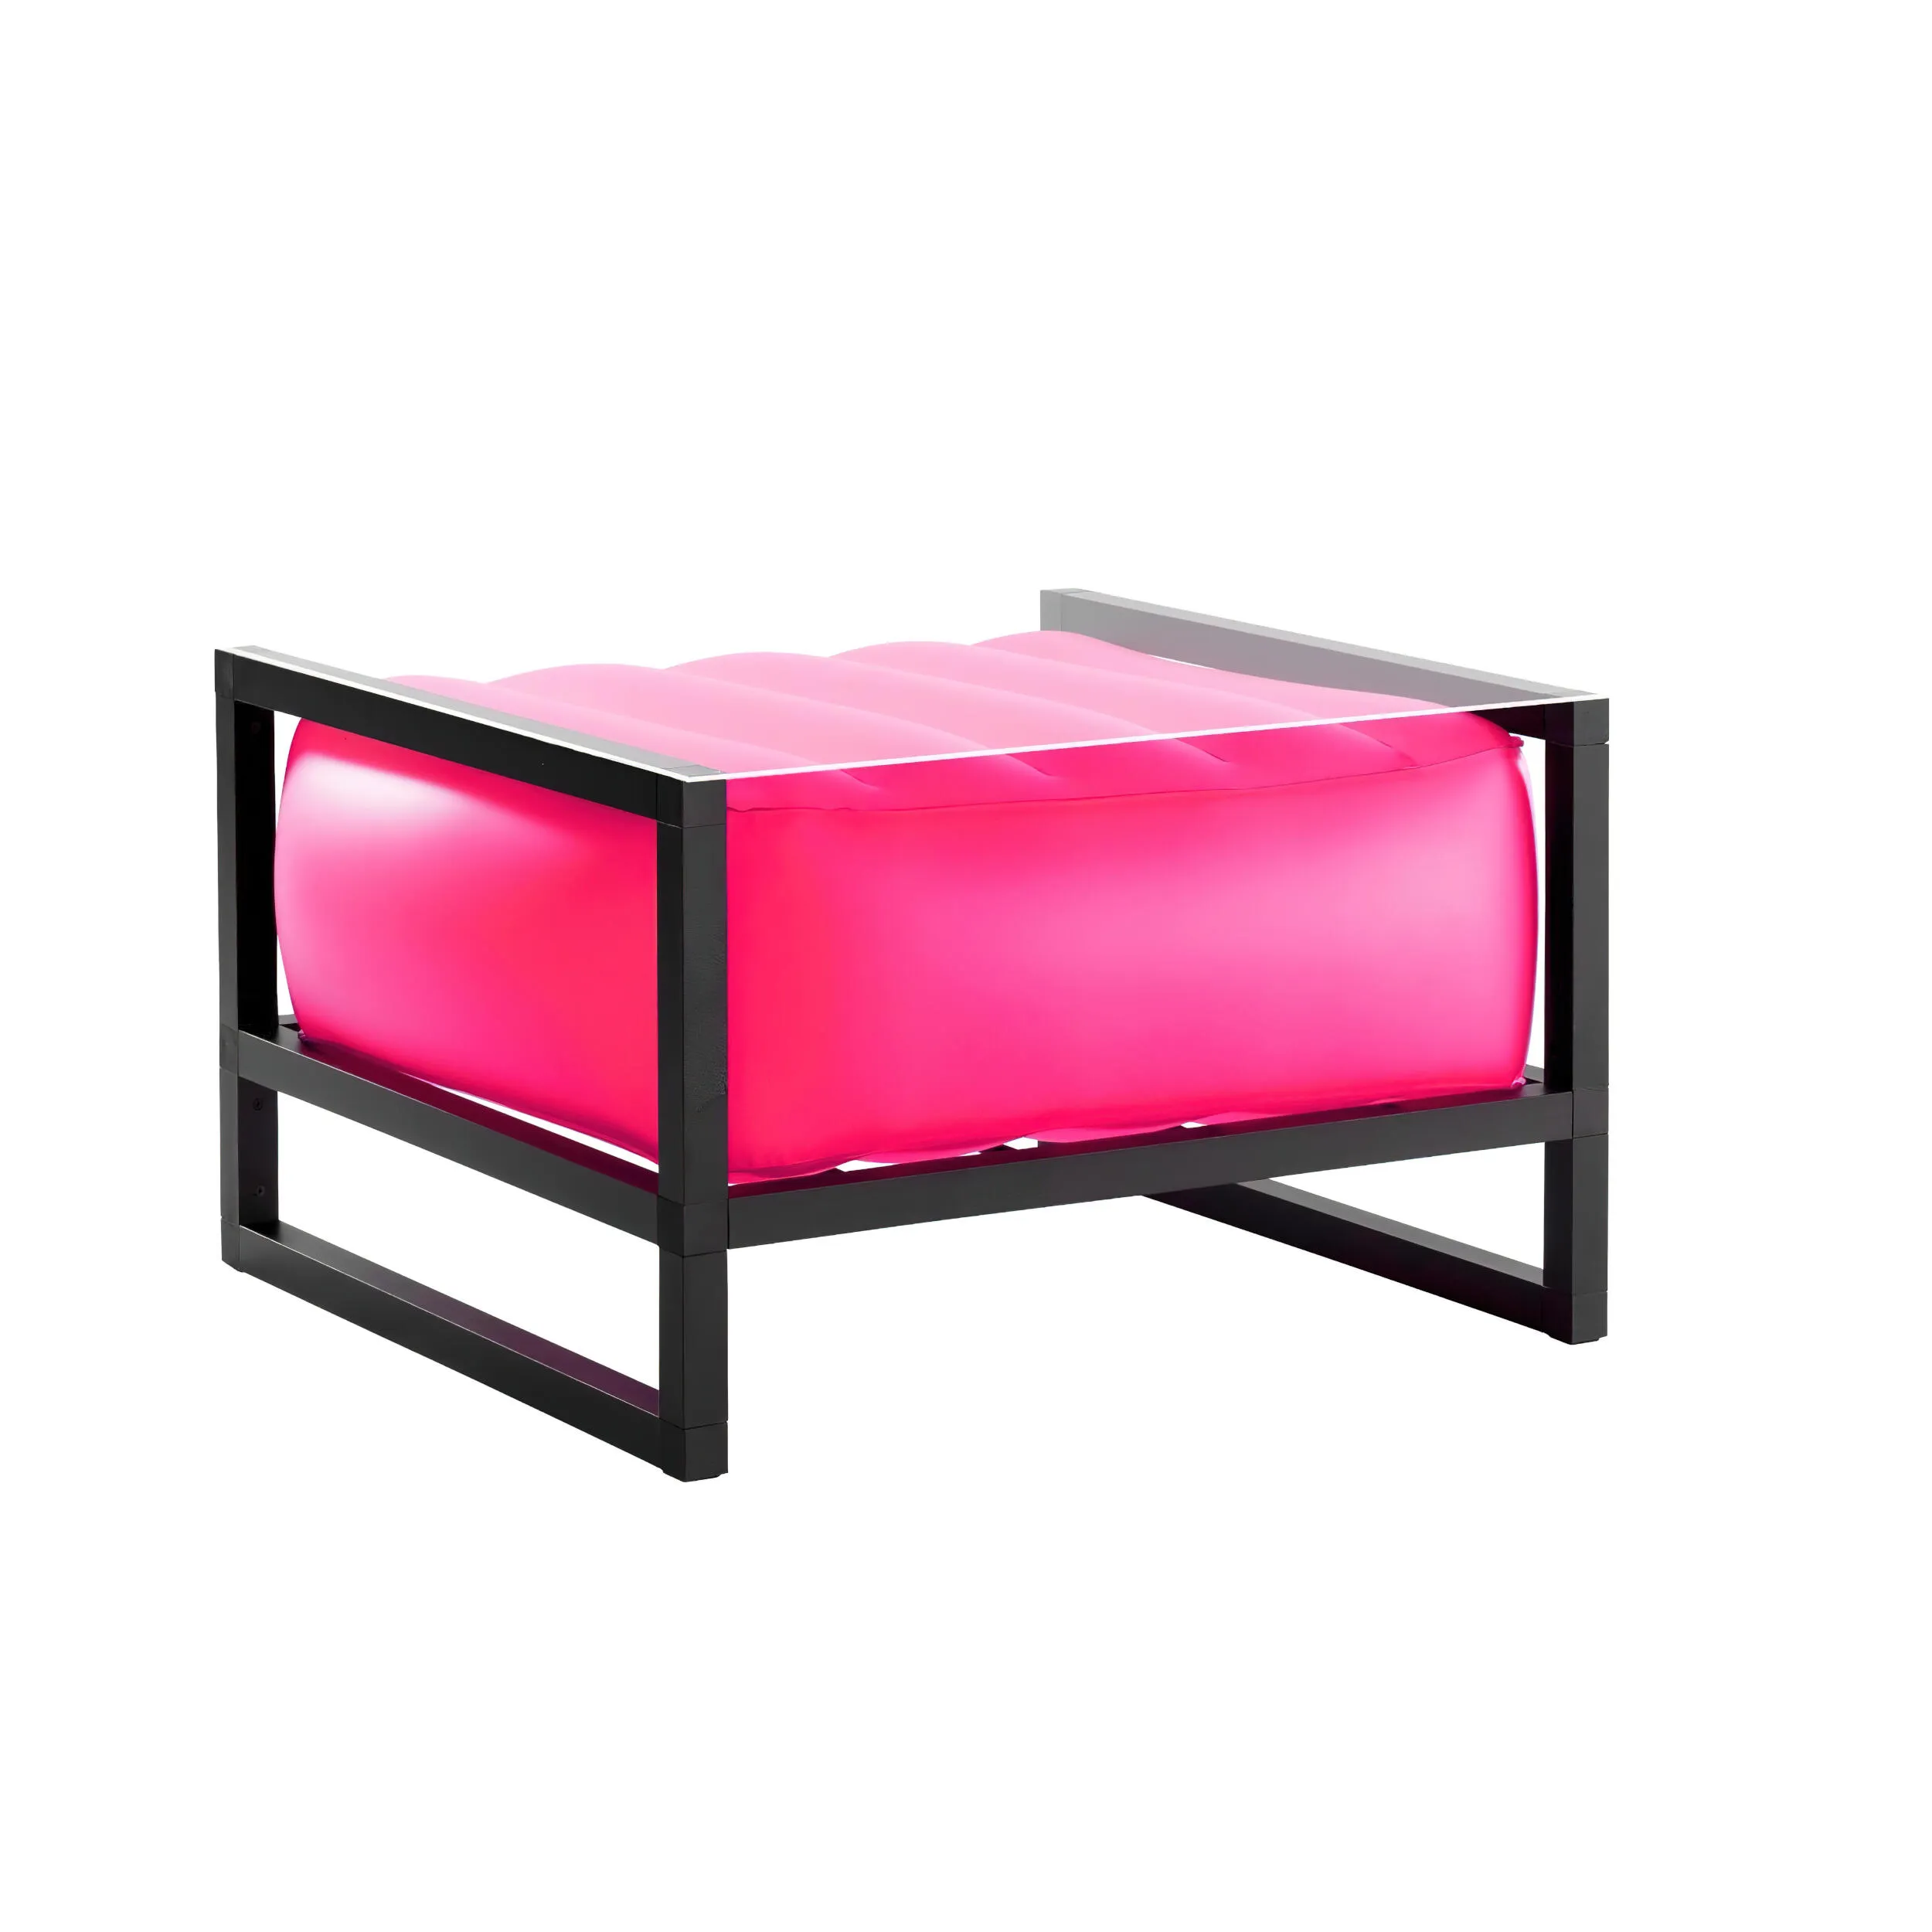 tavolino da salotto Yomi eko illuminato struttura in legno nero, dimensioni 62x70xH40 cm peso 14 kg, seduta gonfiabile in TPU colore rosa traslucido